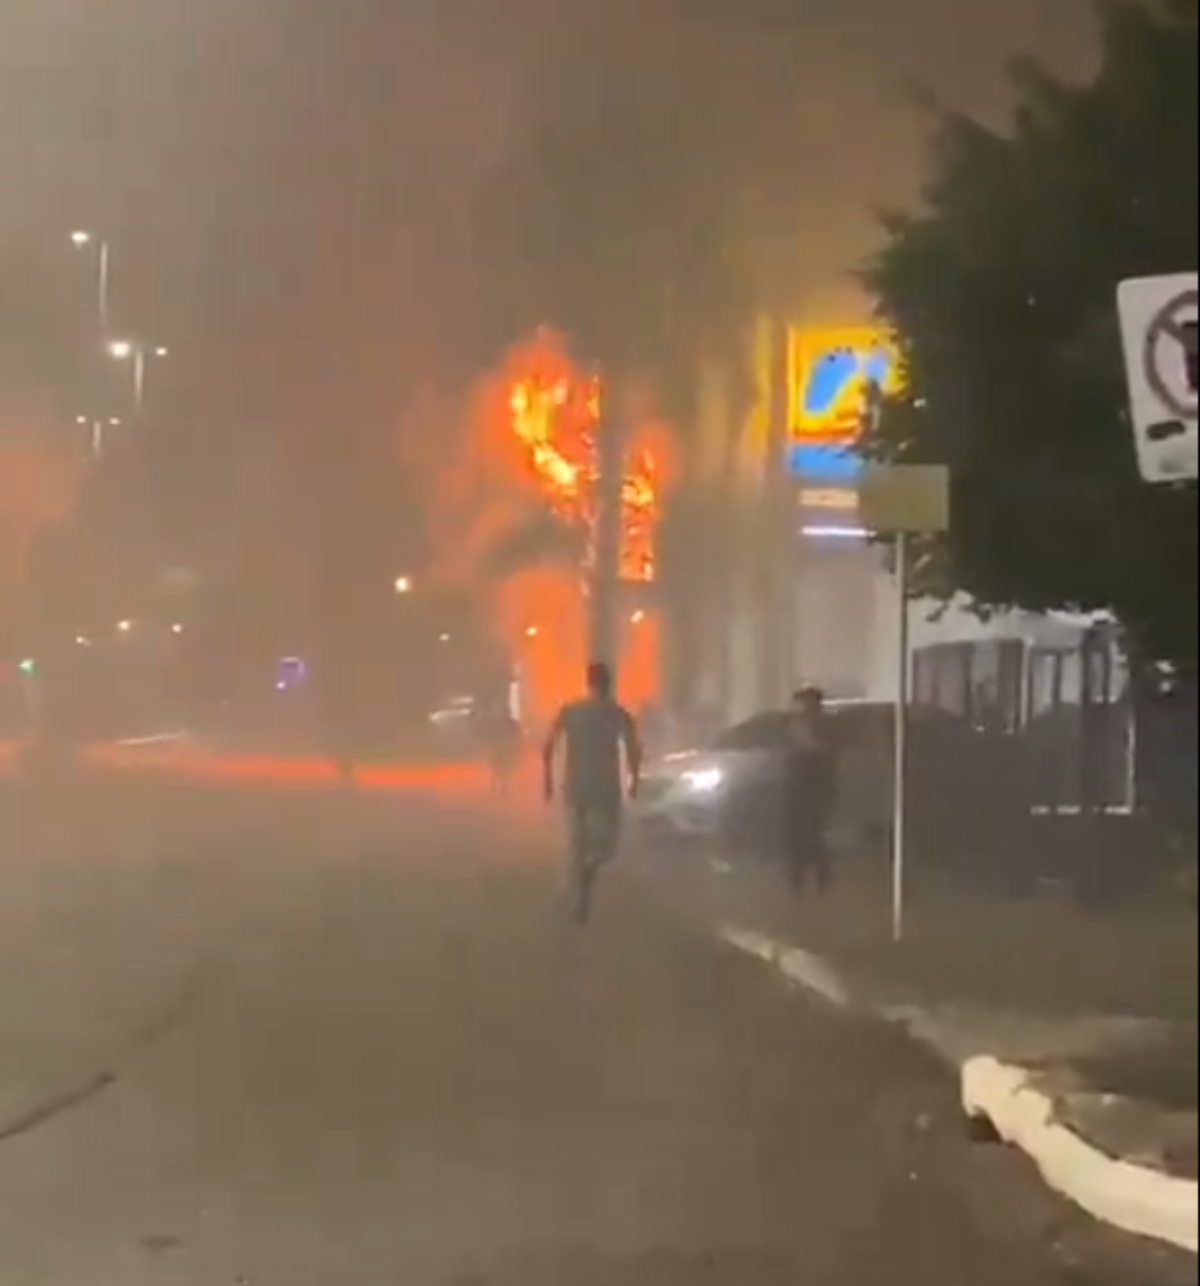  Incêndio em pousada deixa 9 mortos e 7 feridos; veja imagens 